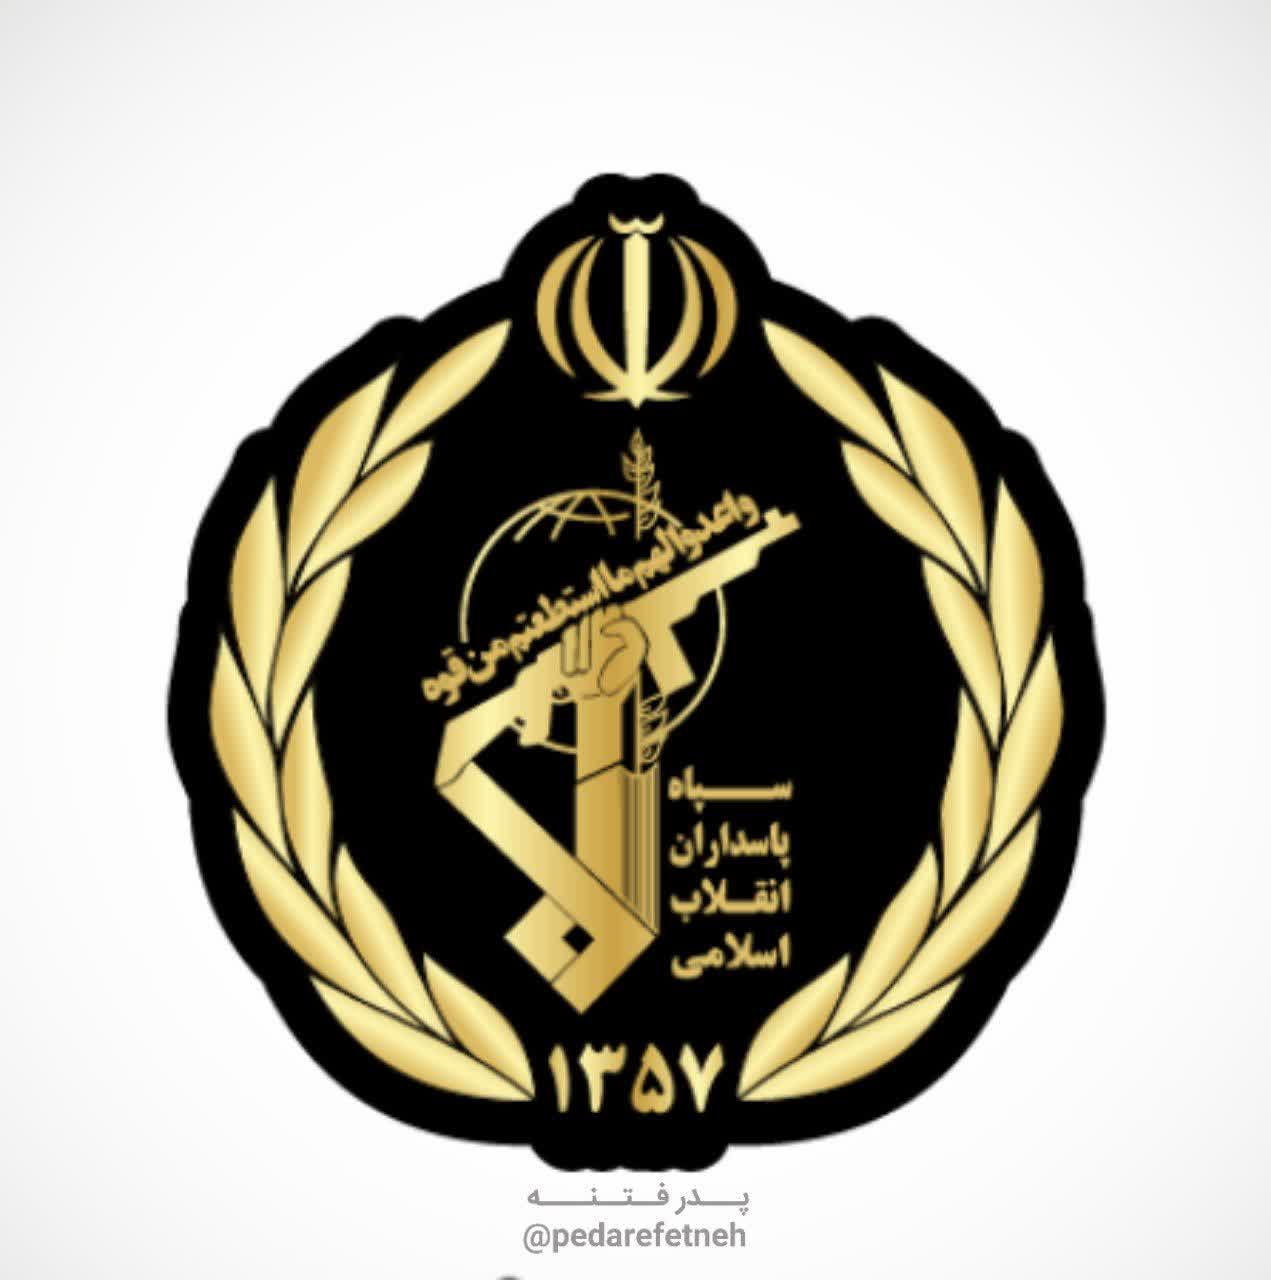 اطلاعیۀ اطلاعات سپاه در خصوص حمایت از رژیم صهیونیستی در فضای مجازی